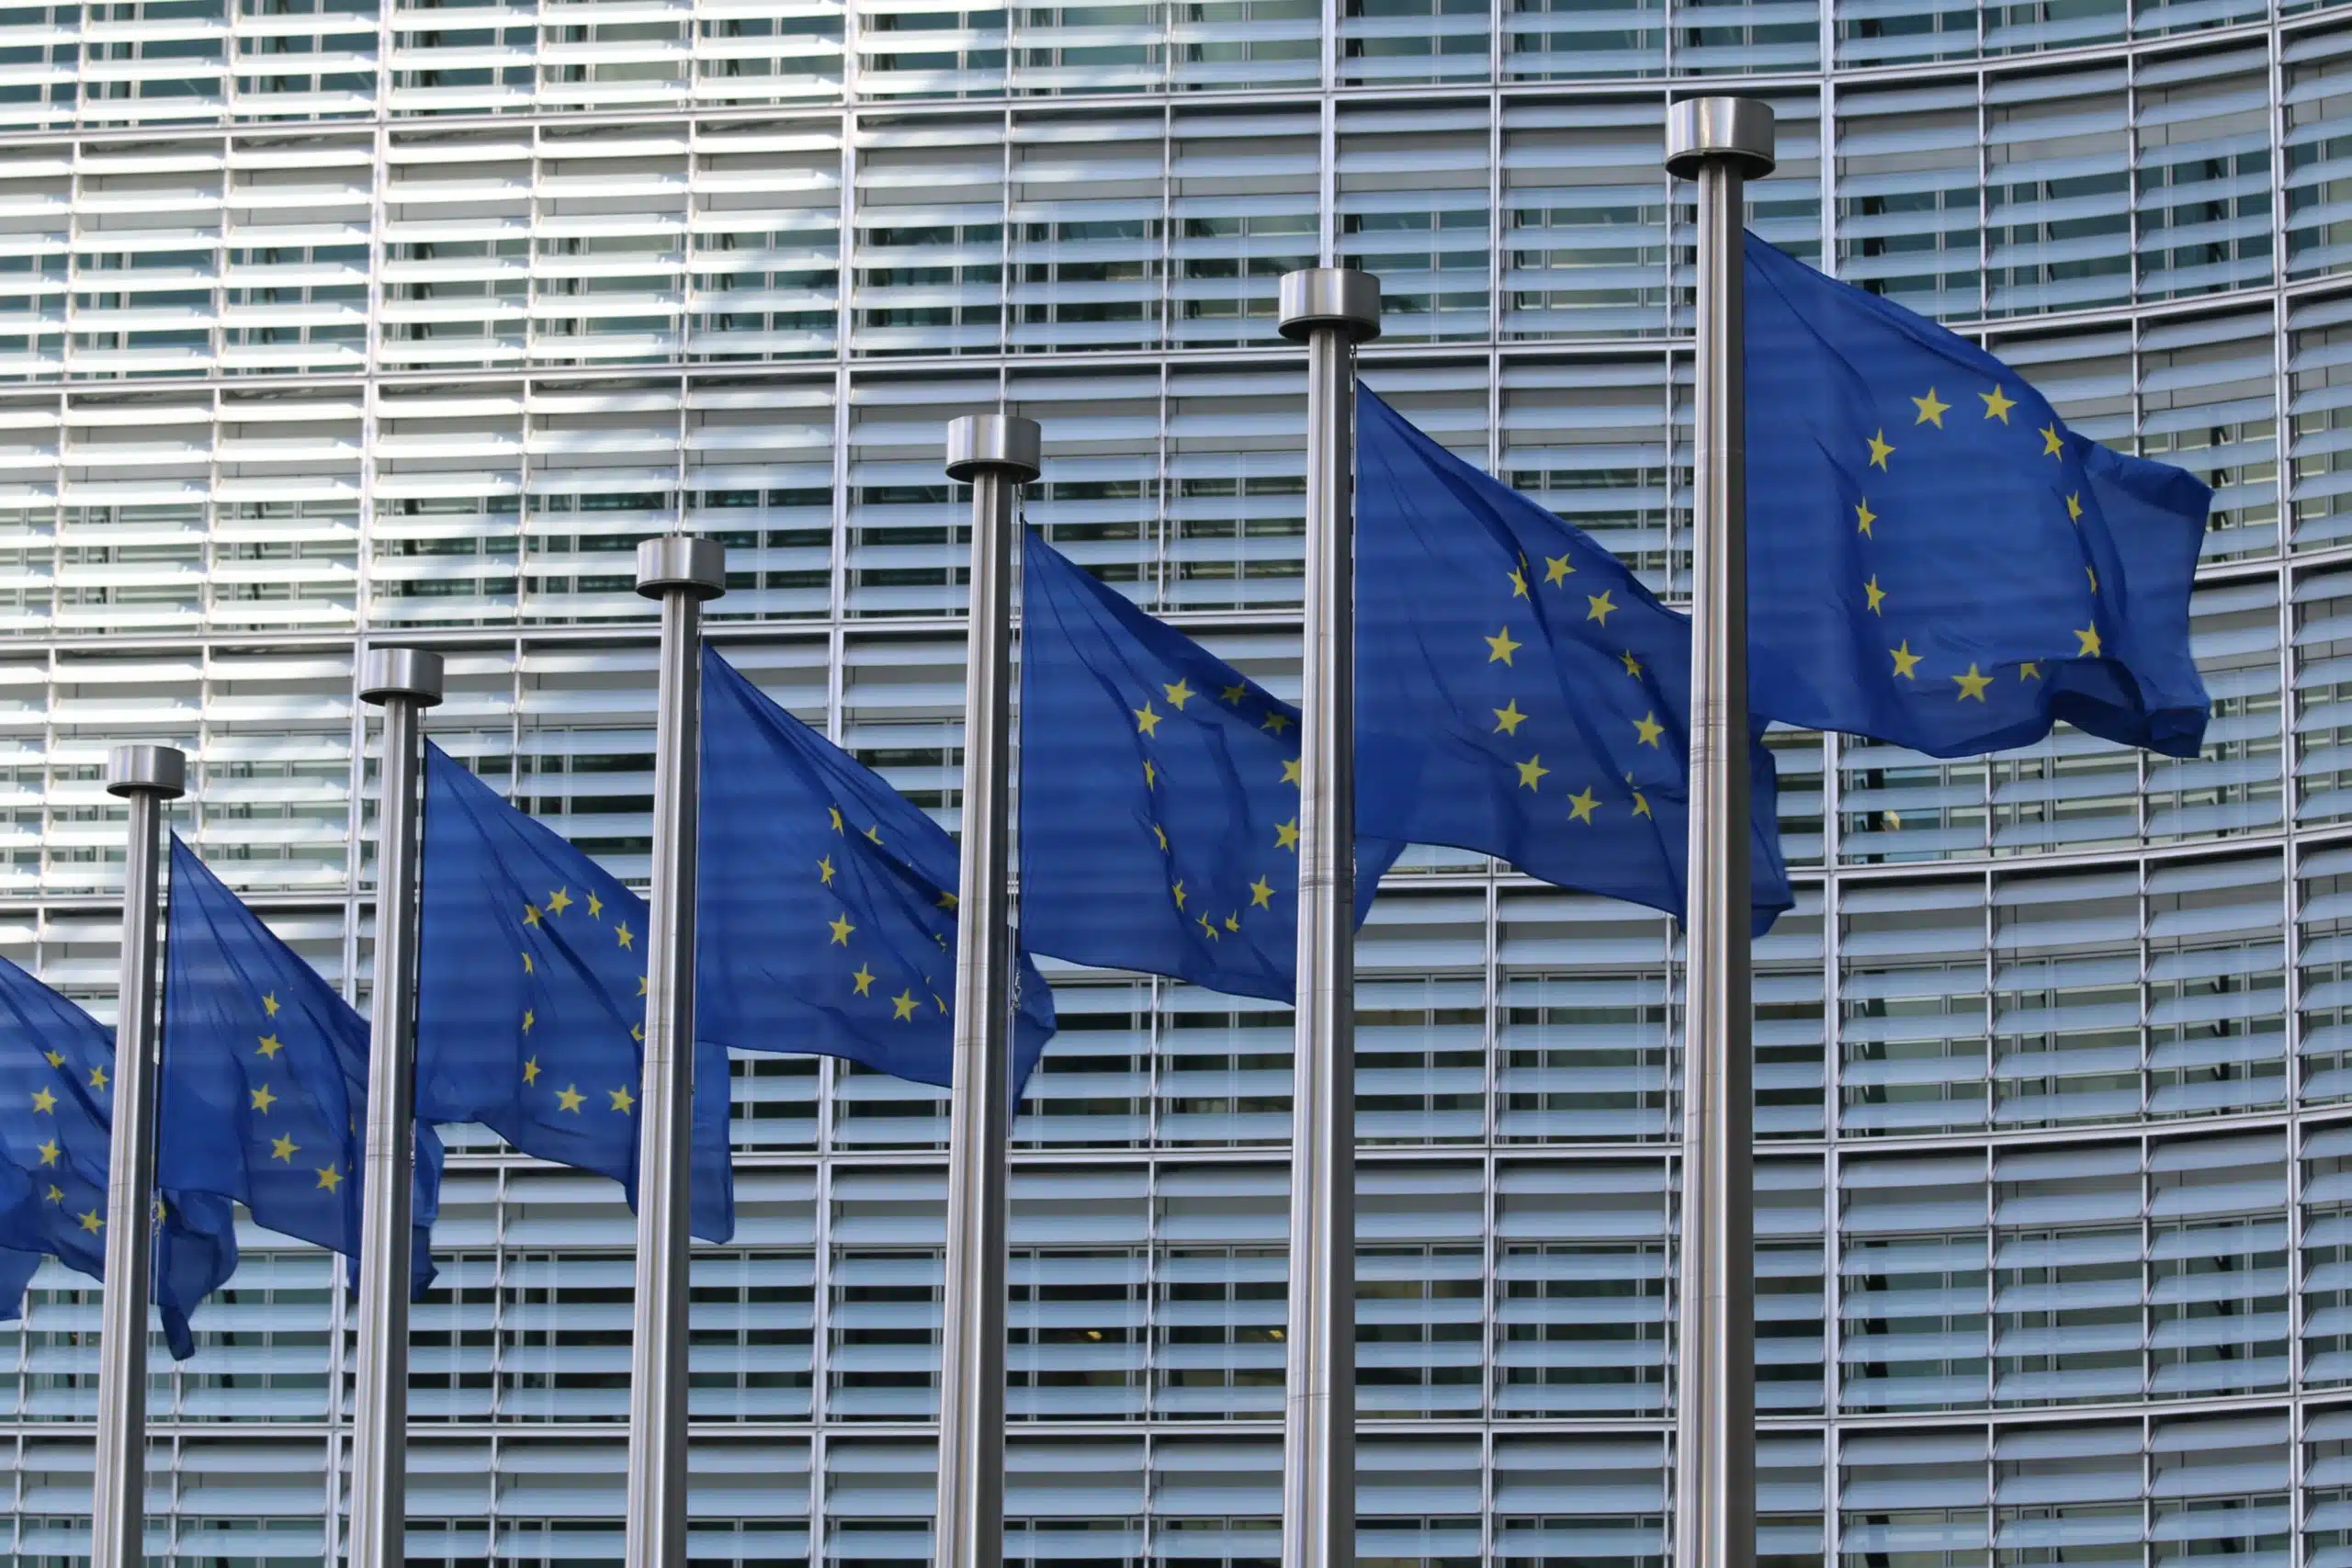 EU flags in a row